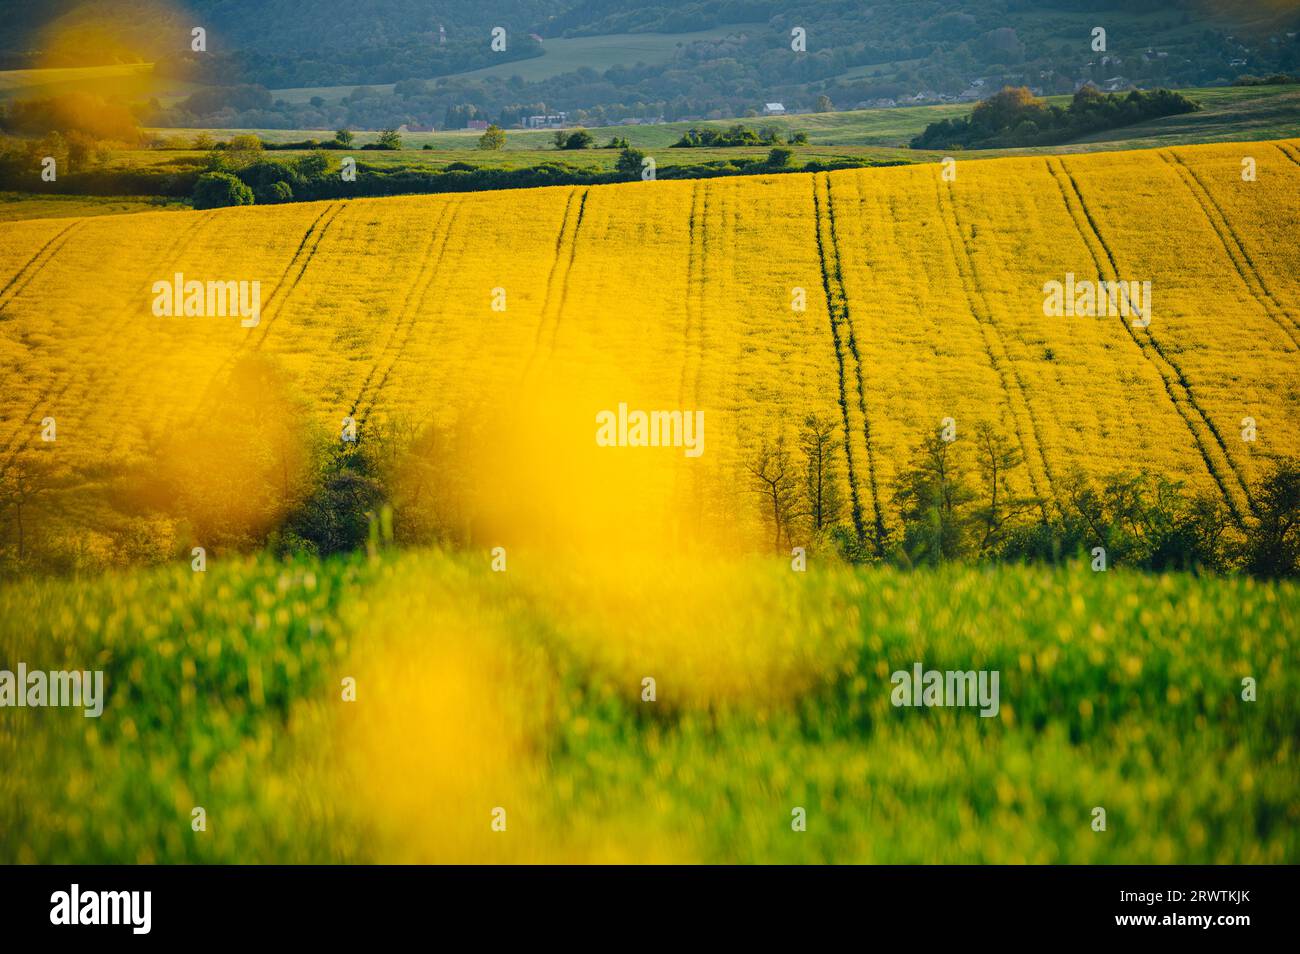 Serenidad primaveral: Campos de colza y trigo en flor completa. Hermoso paisaje agrícola Foto de stock